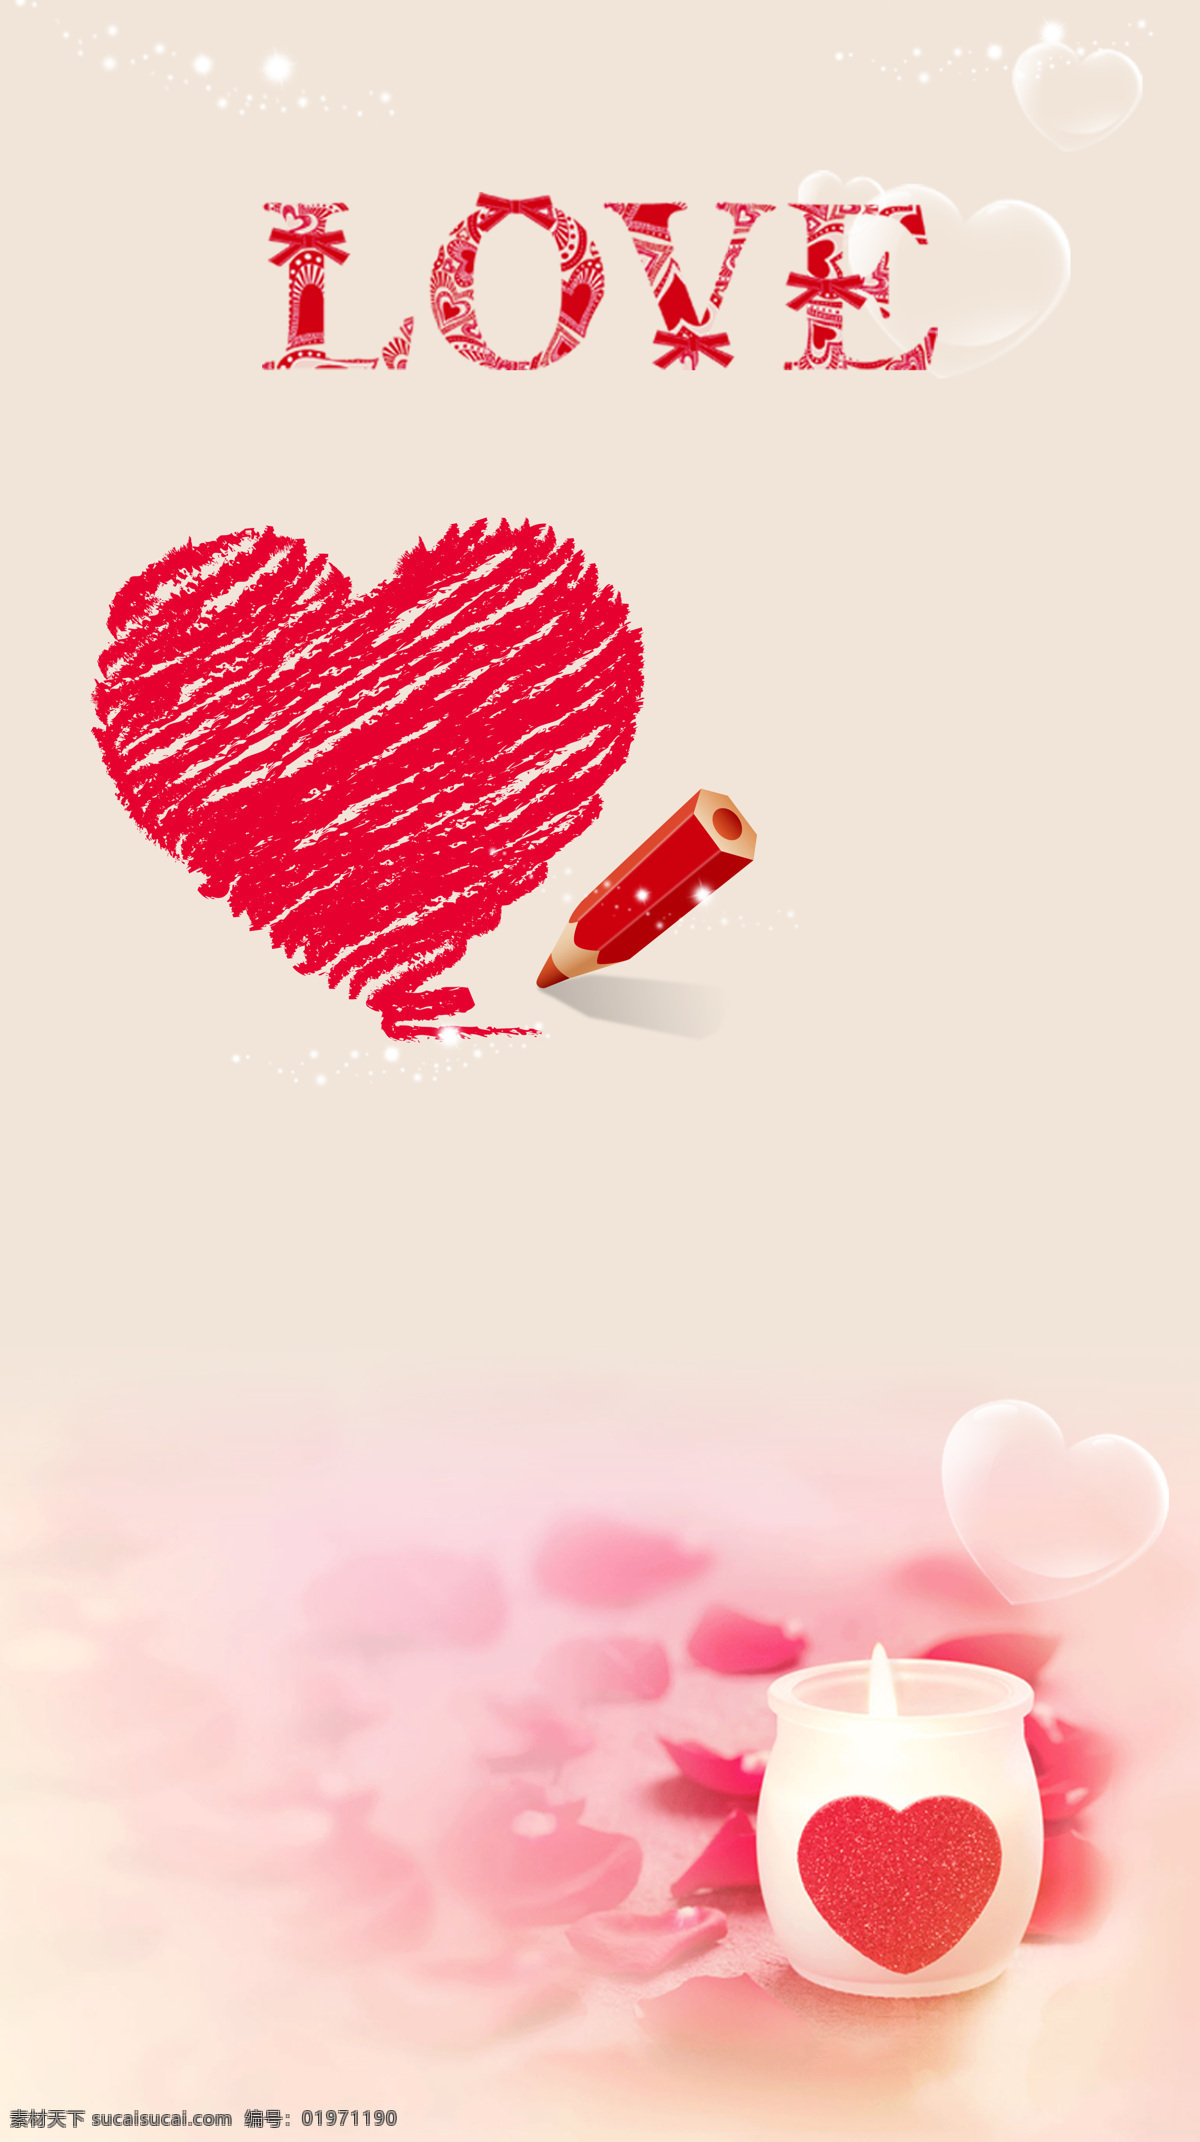 爱情海报宣言 爱情 海报 粉色 蜡烛 竖版 节气画面